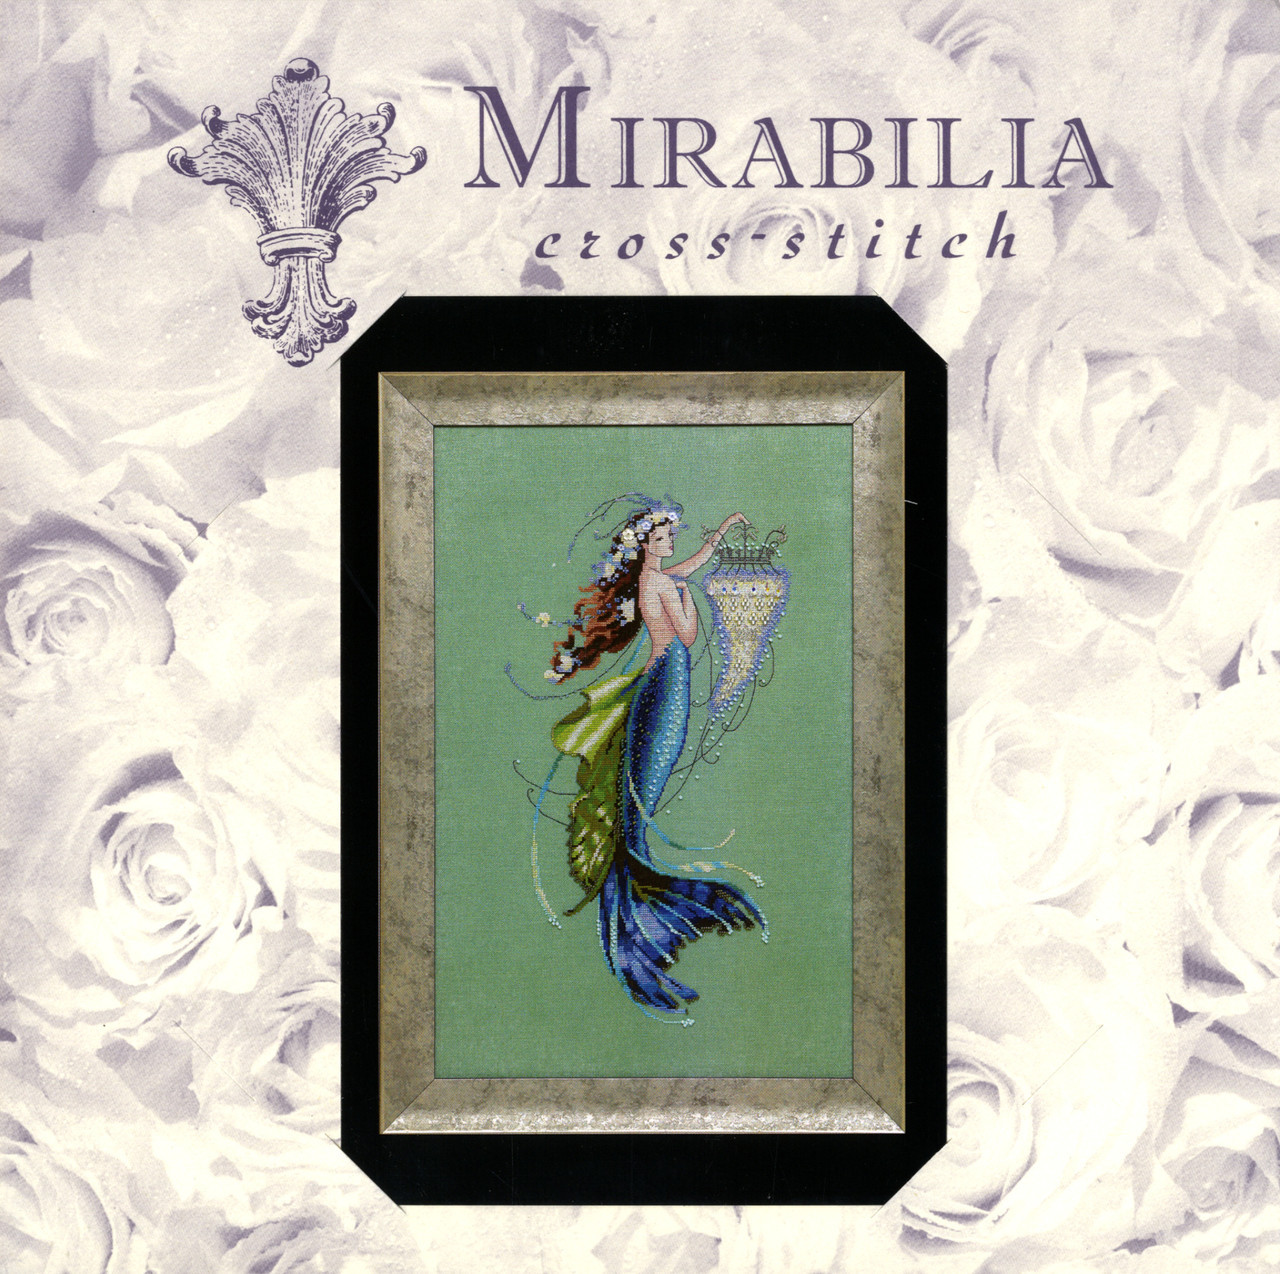 Mirabilia - Siren and the Shipwreck